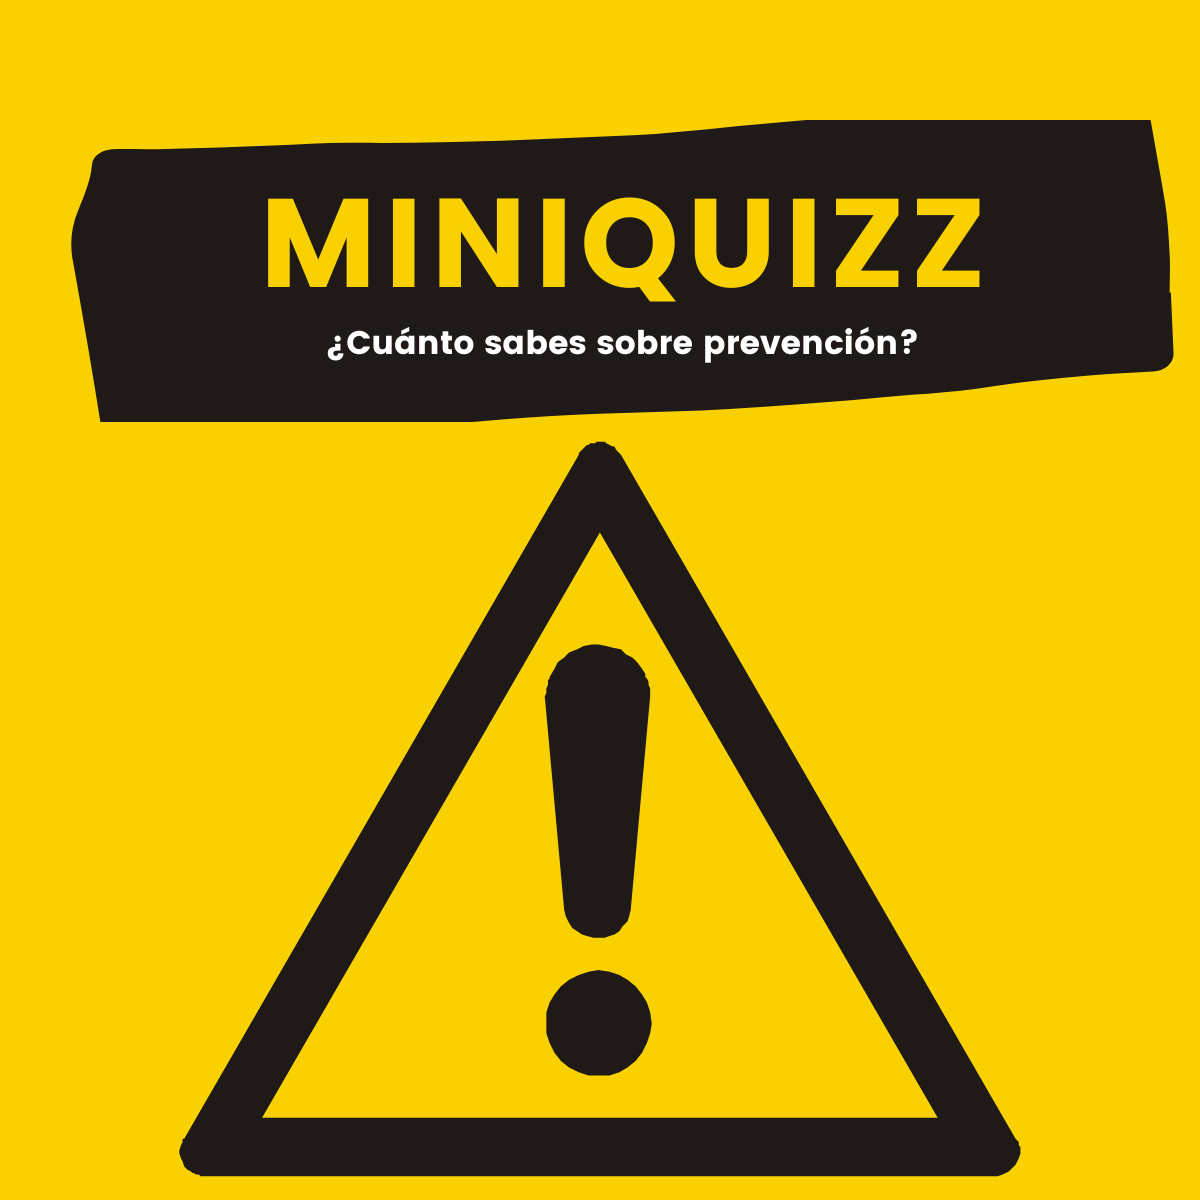 Miniquizz: Señalización